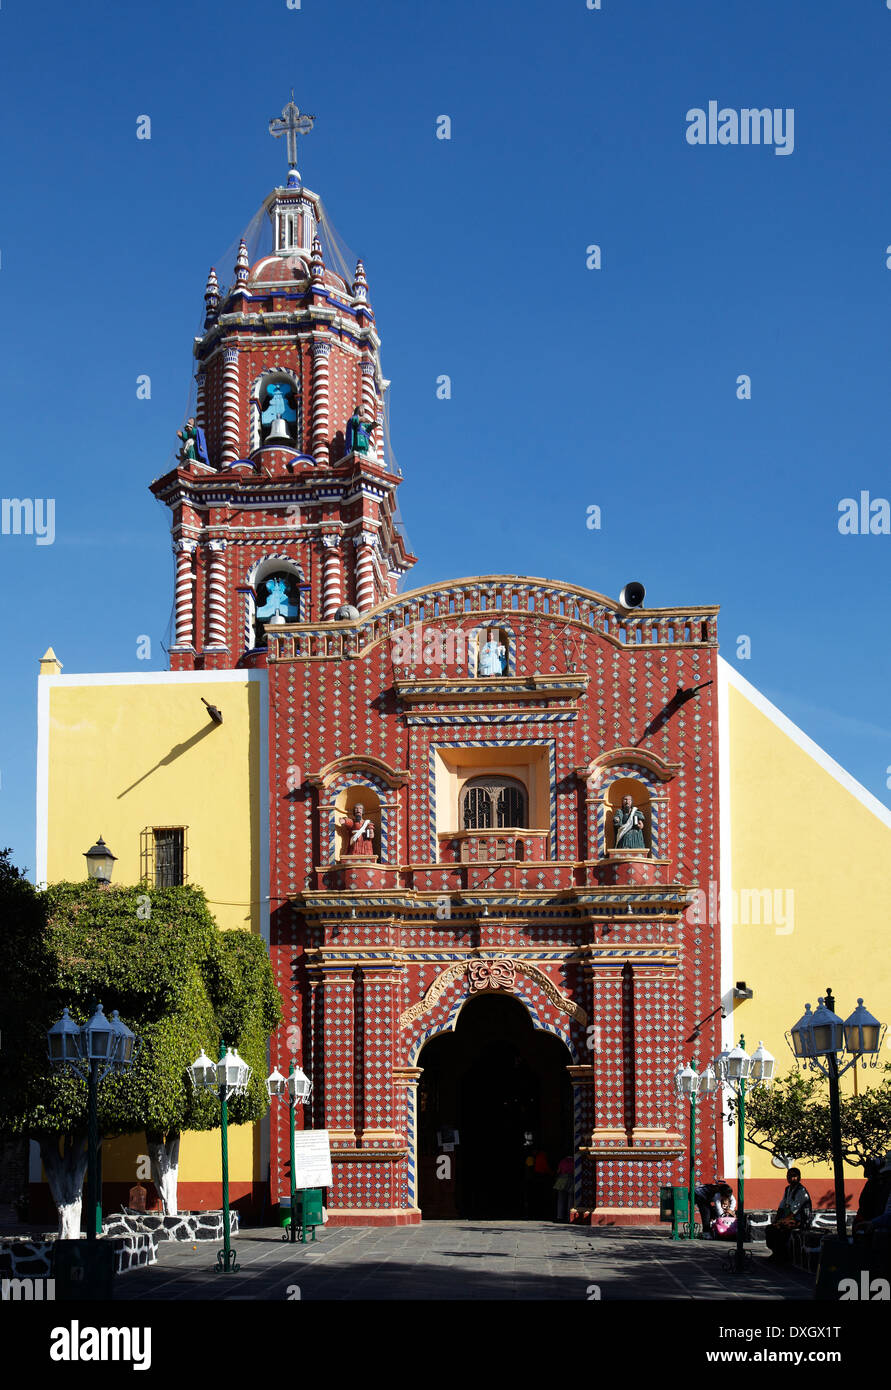 América, Mexico, Puebla state, Tonantzintla village, Santa María church Stock Photo